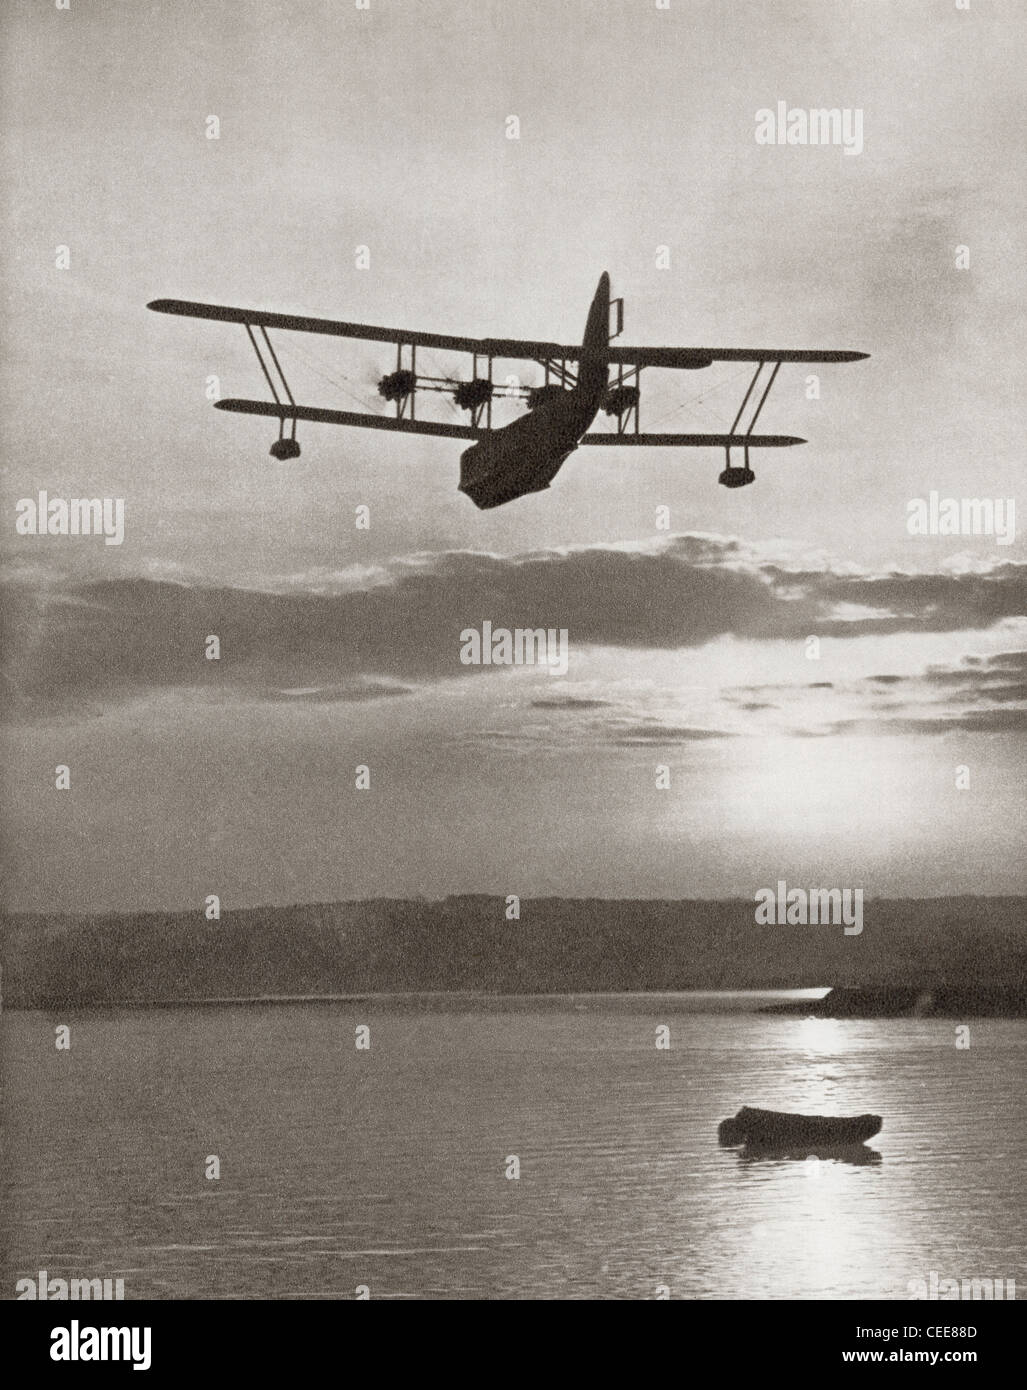 Une classe Imperial Airlines Scipion flying boat c.1931. À partir de l'histoire mouvementée de 25 ans en images, publié en 1935. Banque D'Images